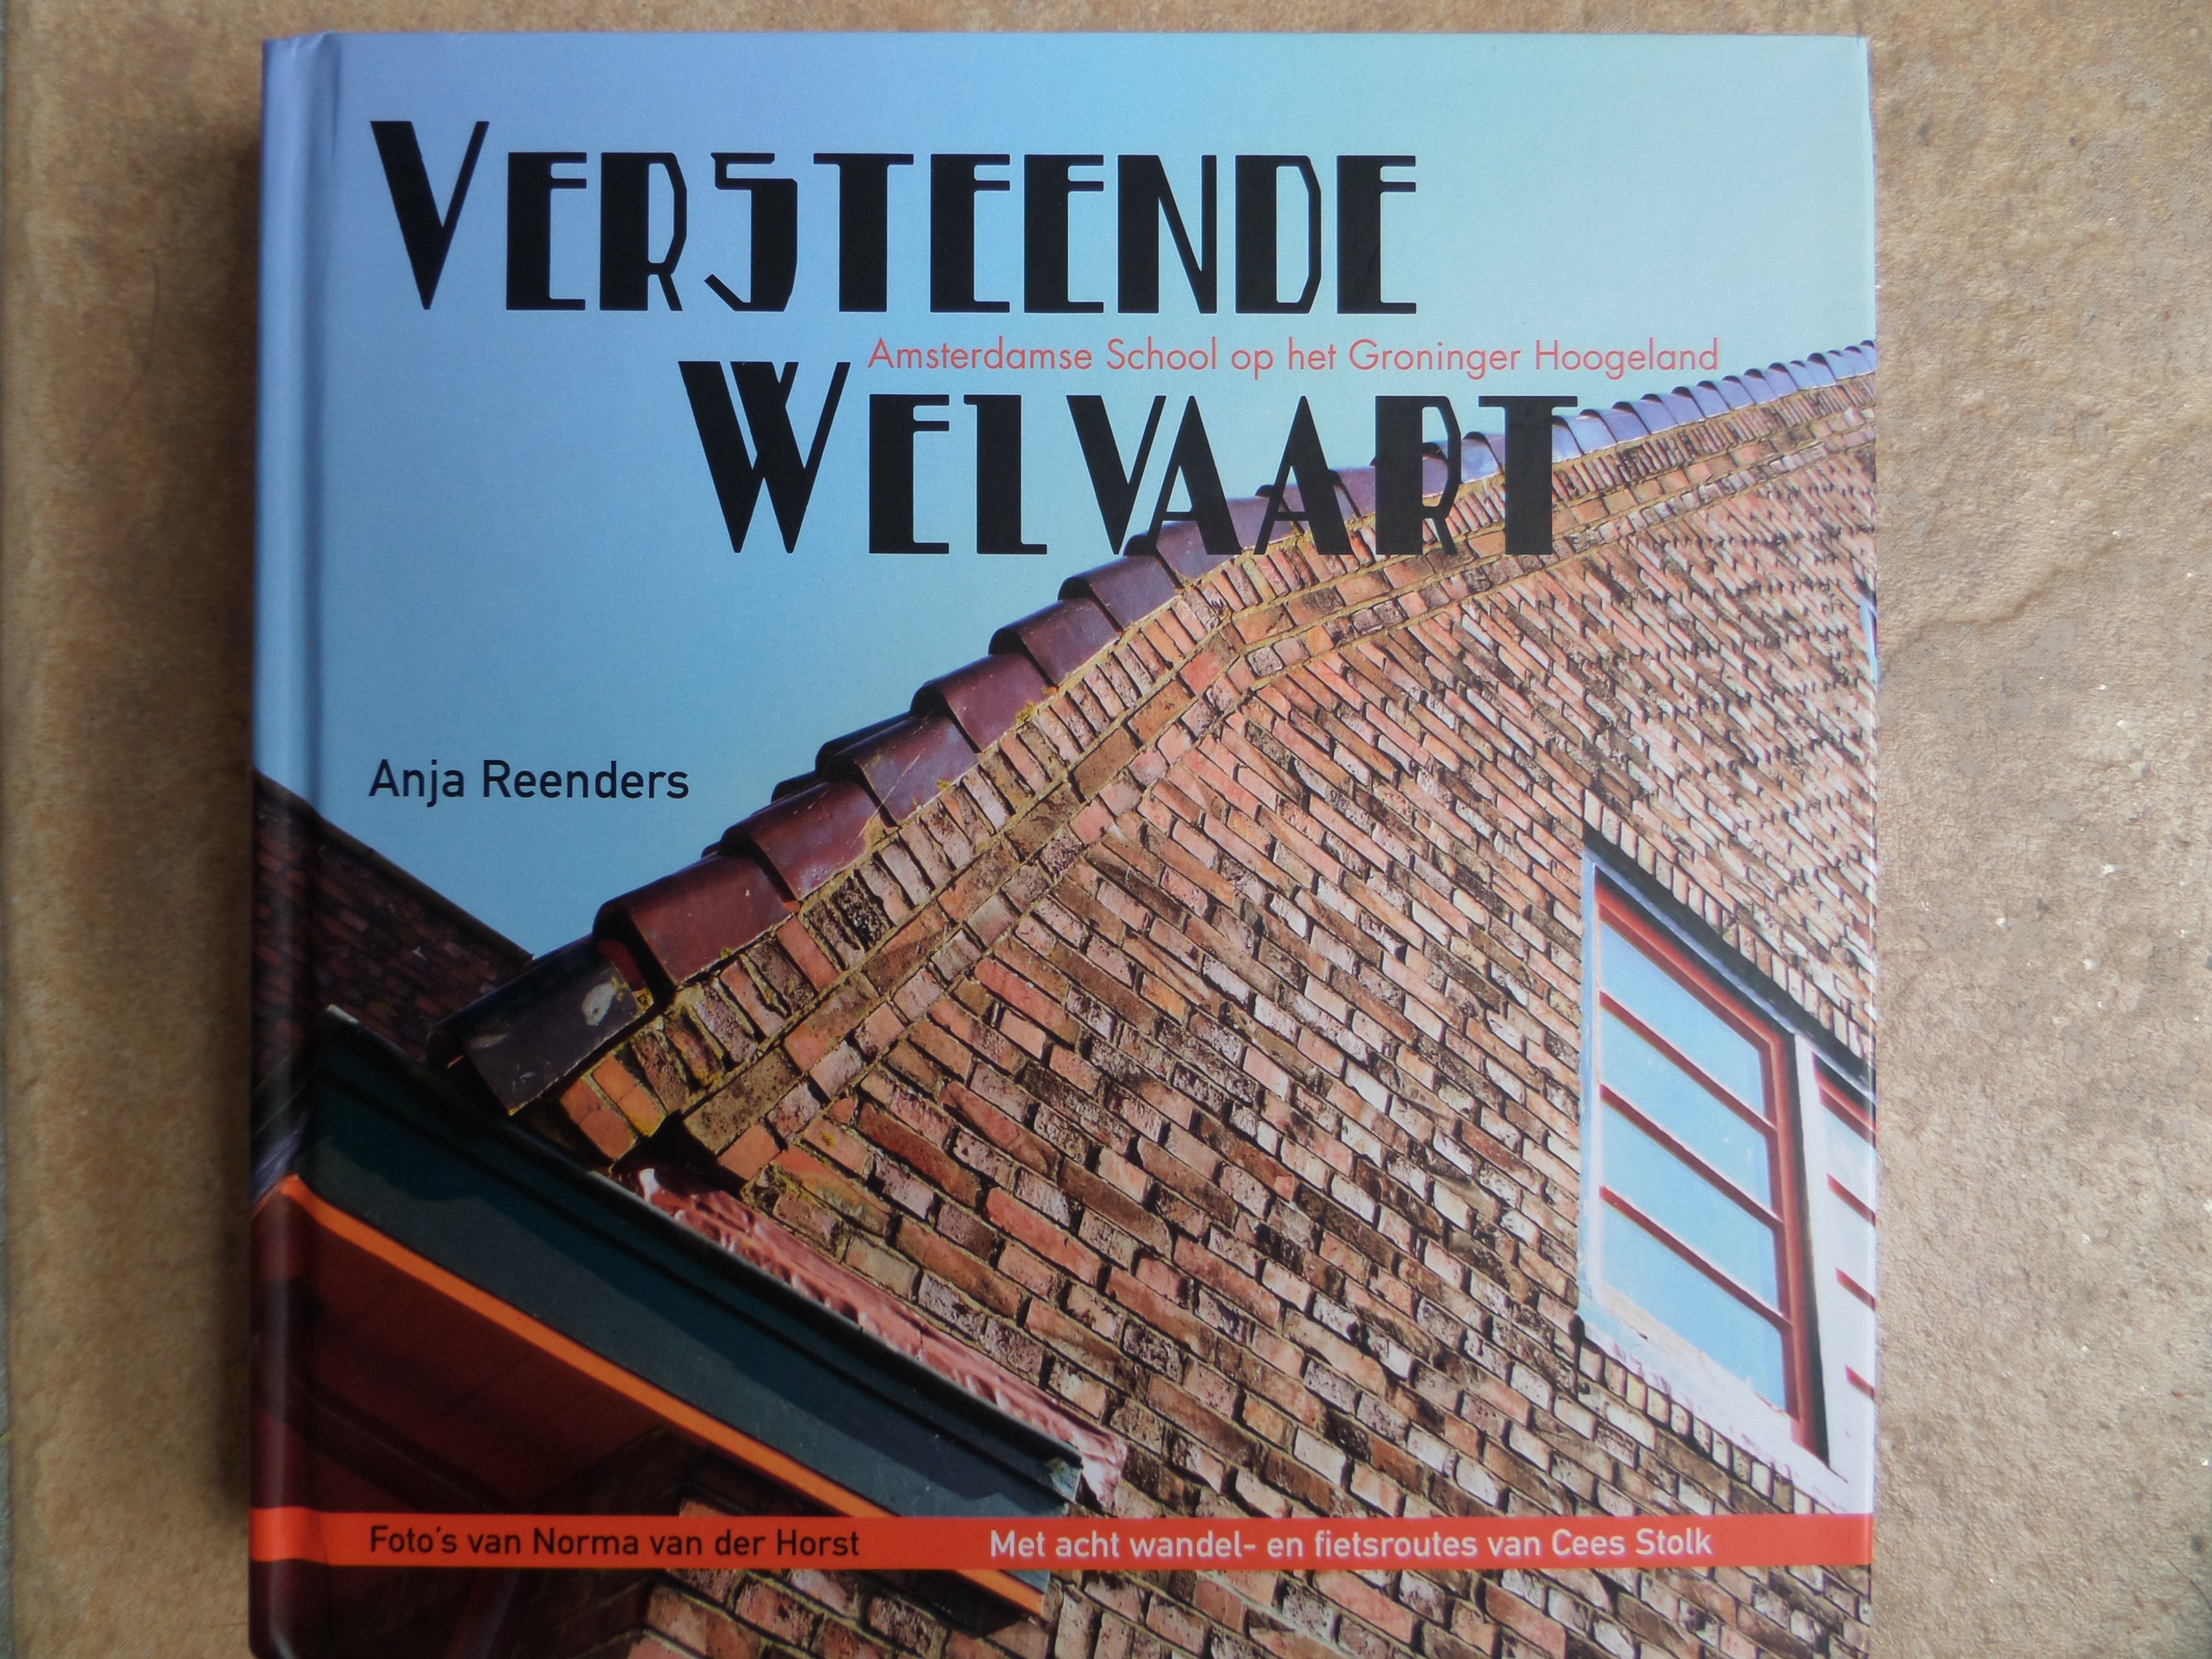 Versteende Welvaart